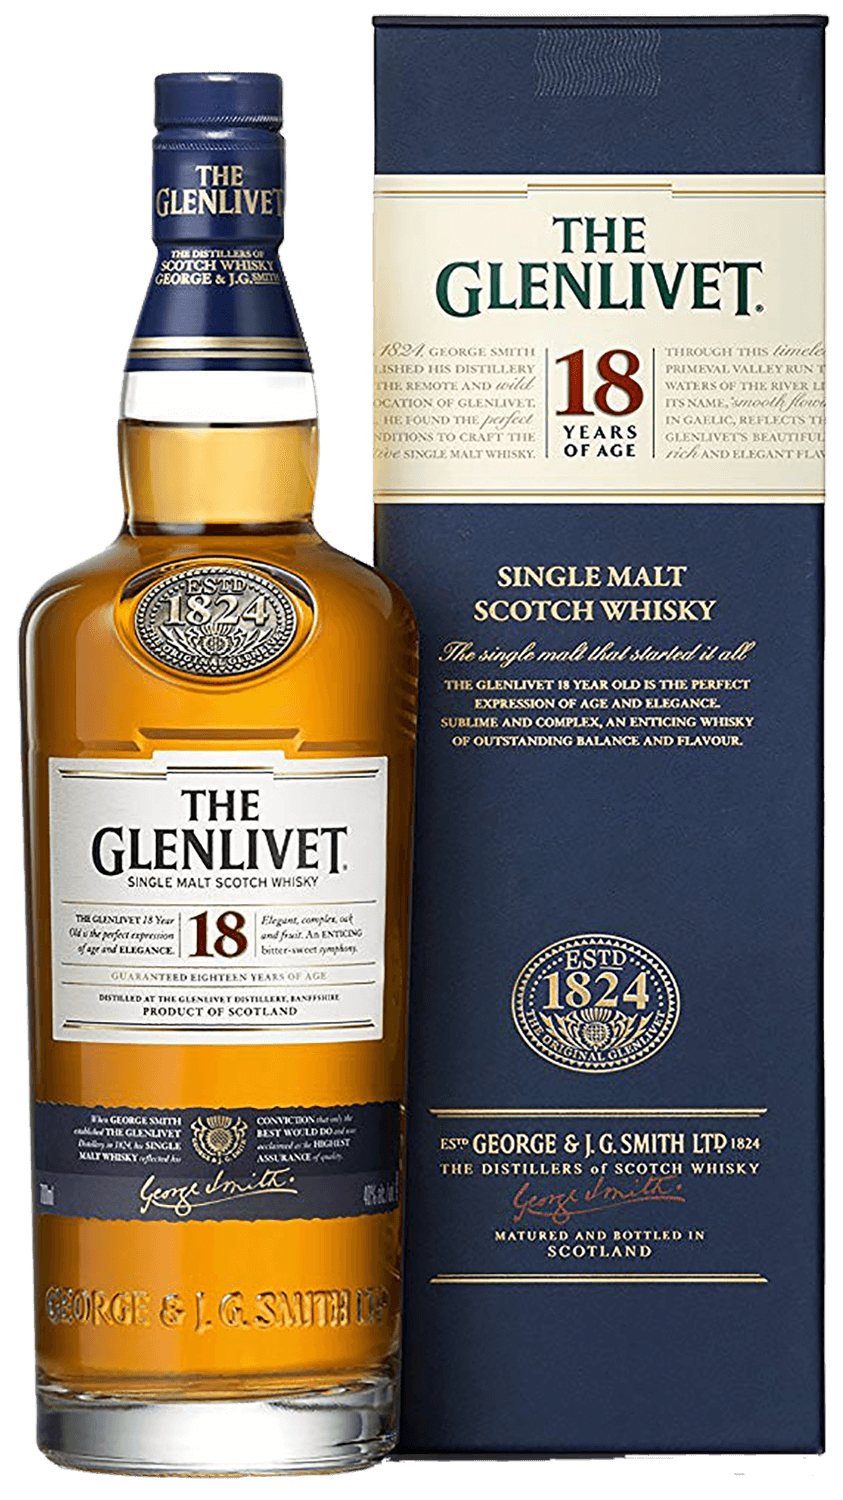 The Glenlivet 18 y.o. single malt scotch whisky (gift box) tomintoul speyside glenlivet peaty tang single malt scotch whisky gift box